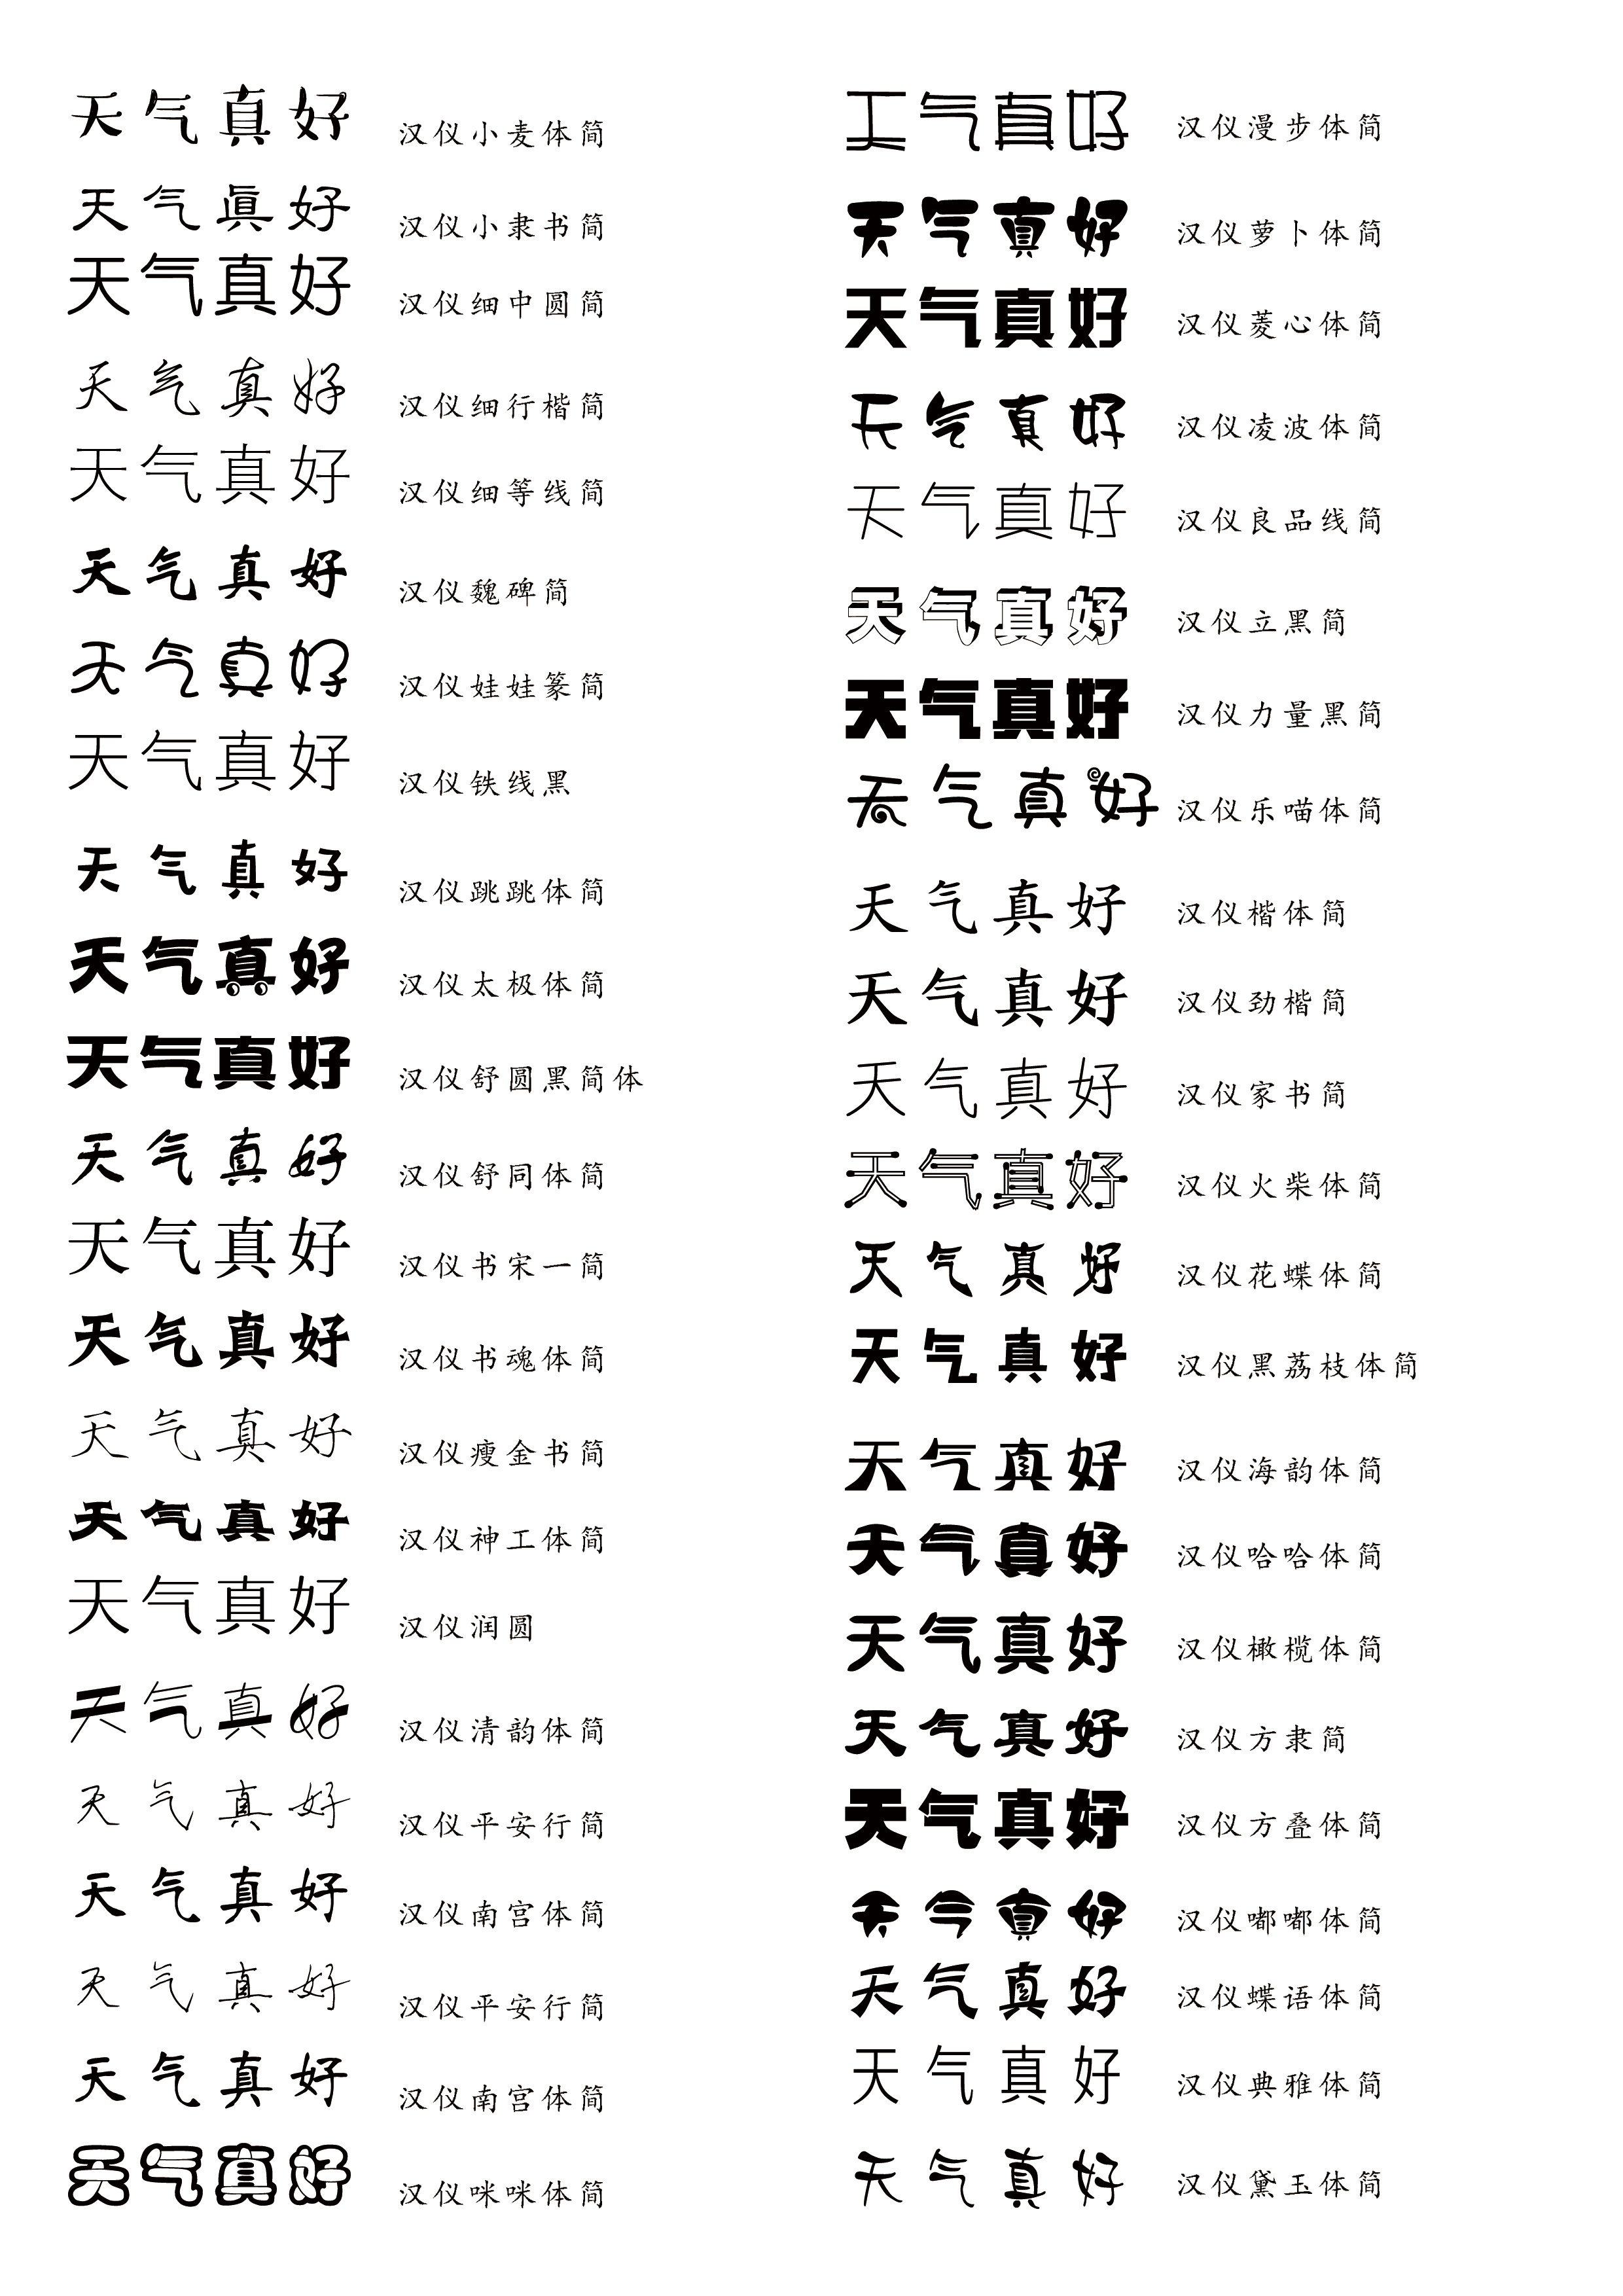 字体分类汉字图片